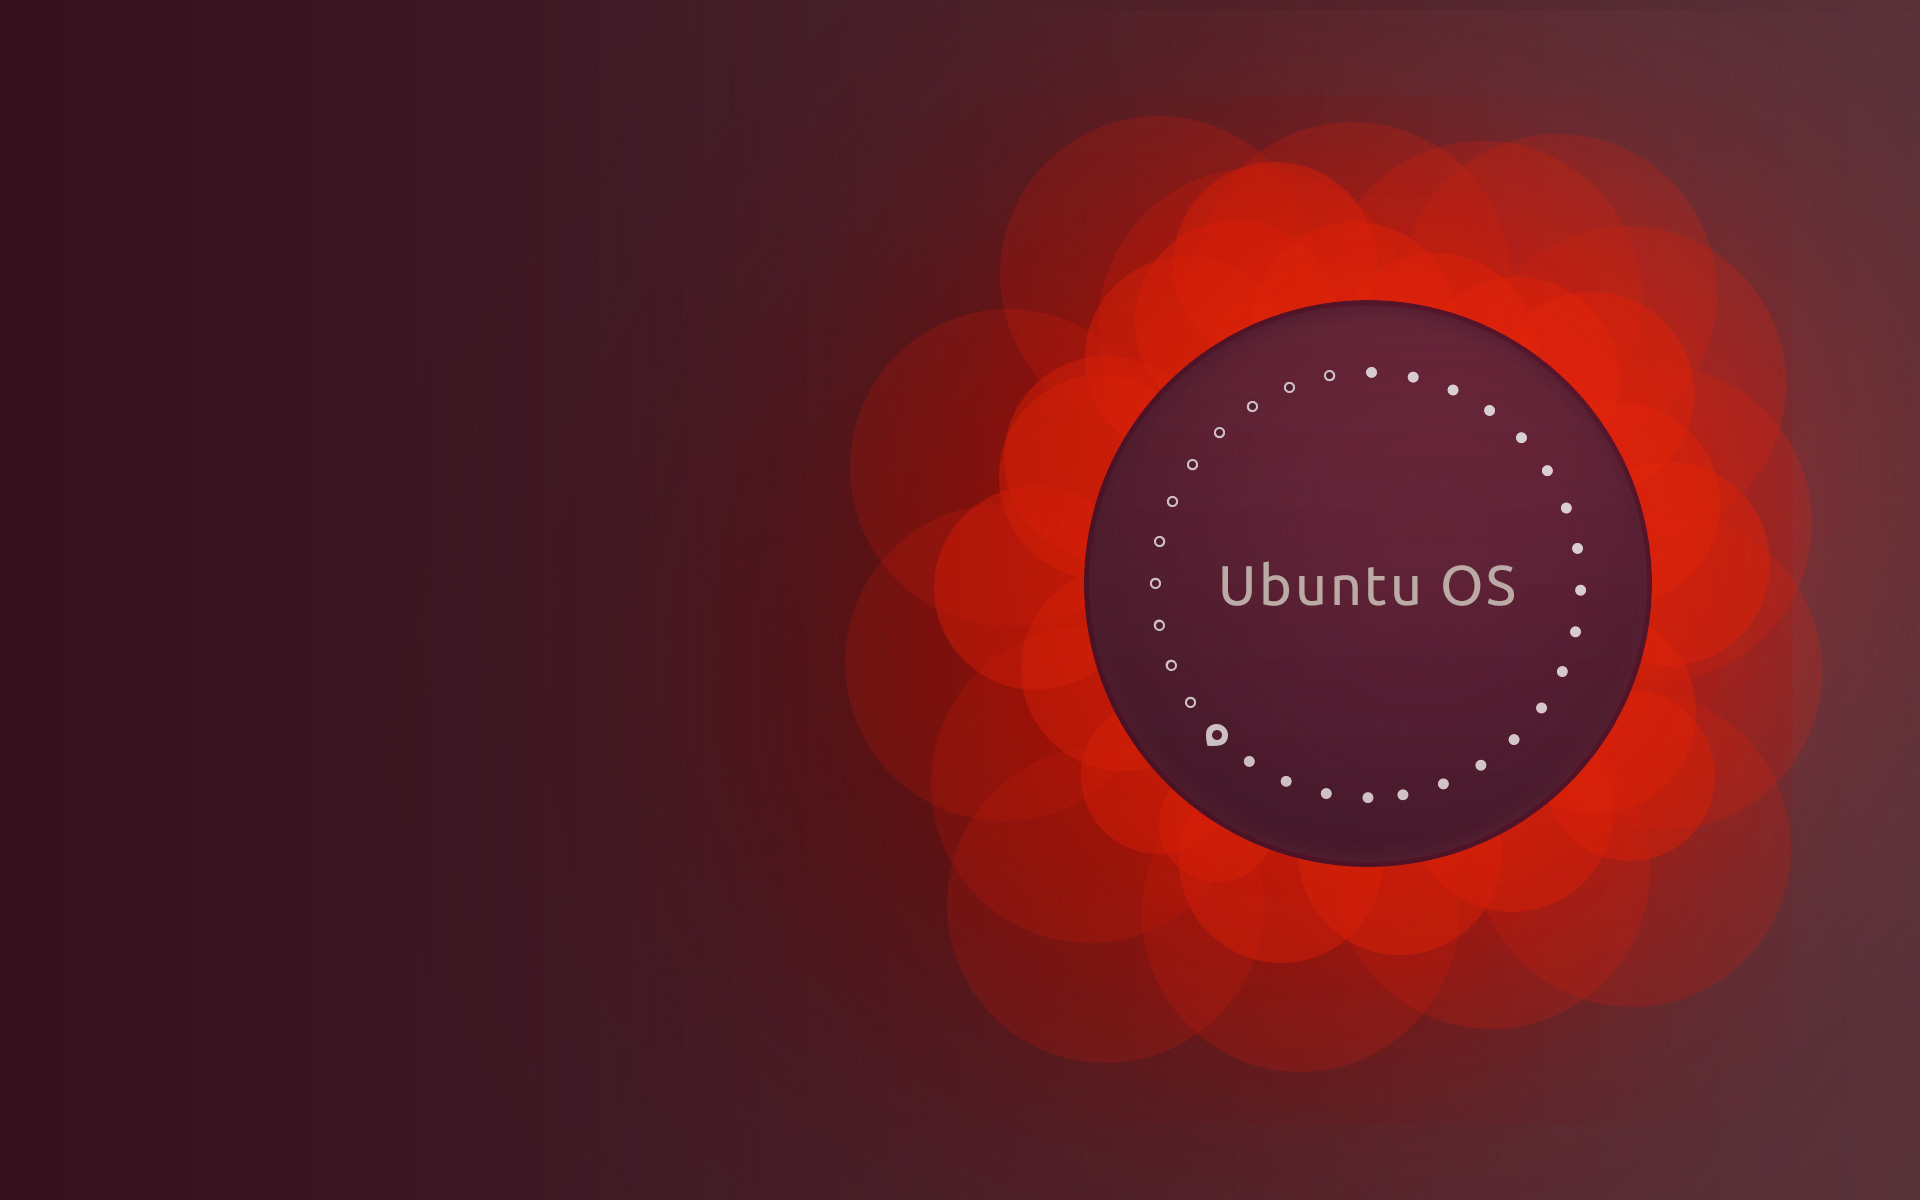 Making A Nice Ubuntu Desktop Wallpaper In Adobe Photoshop